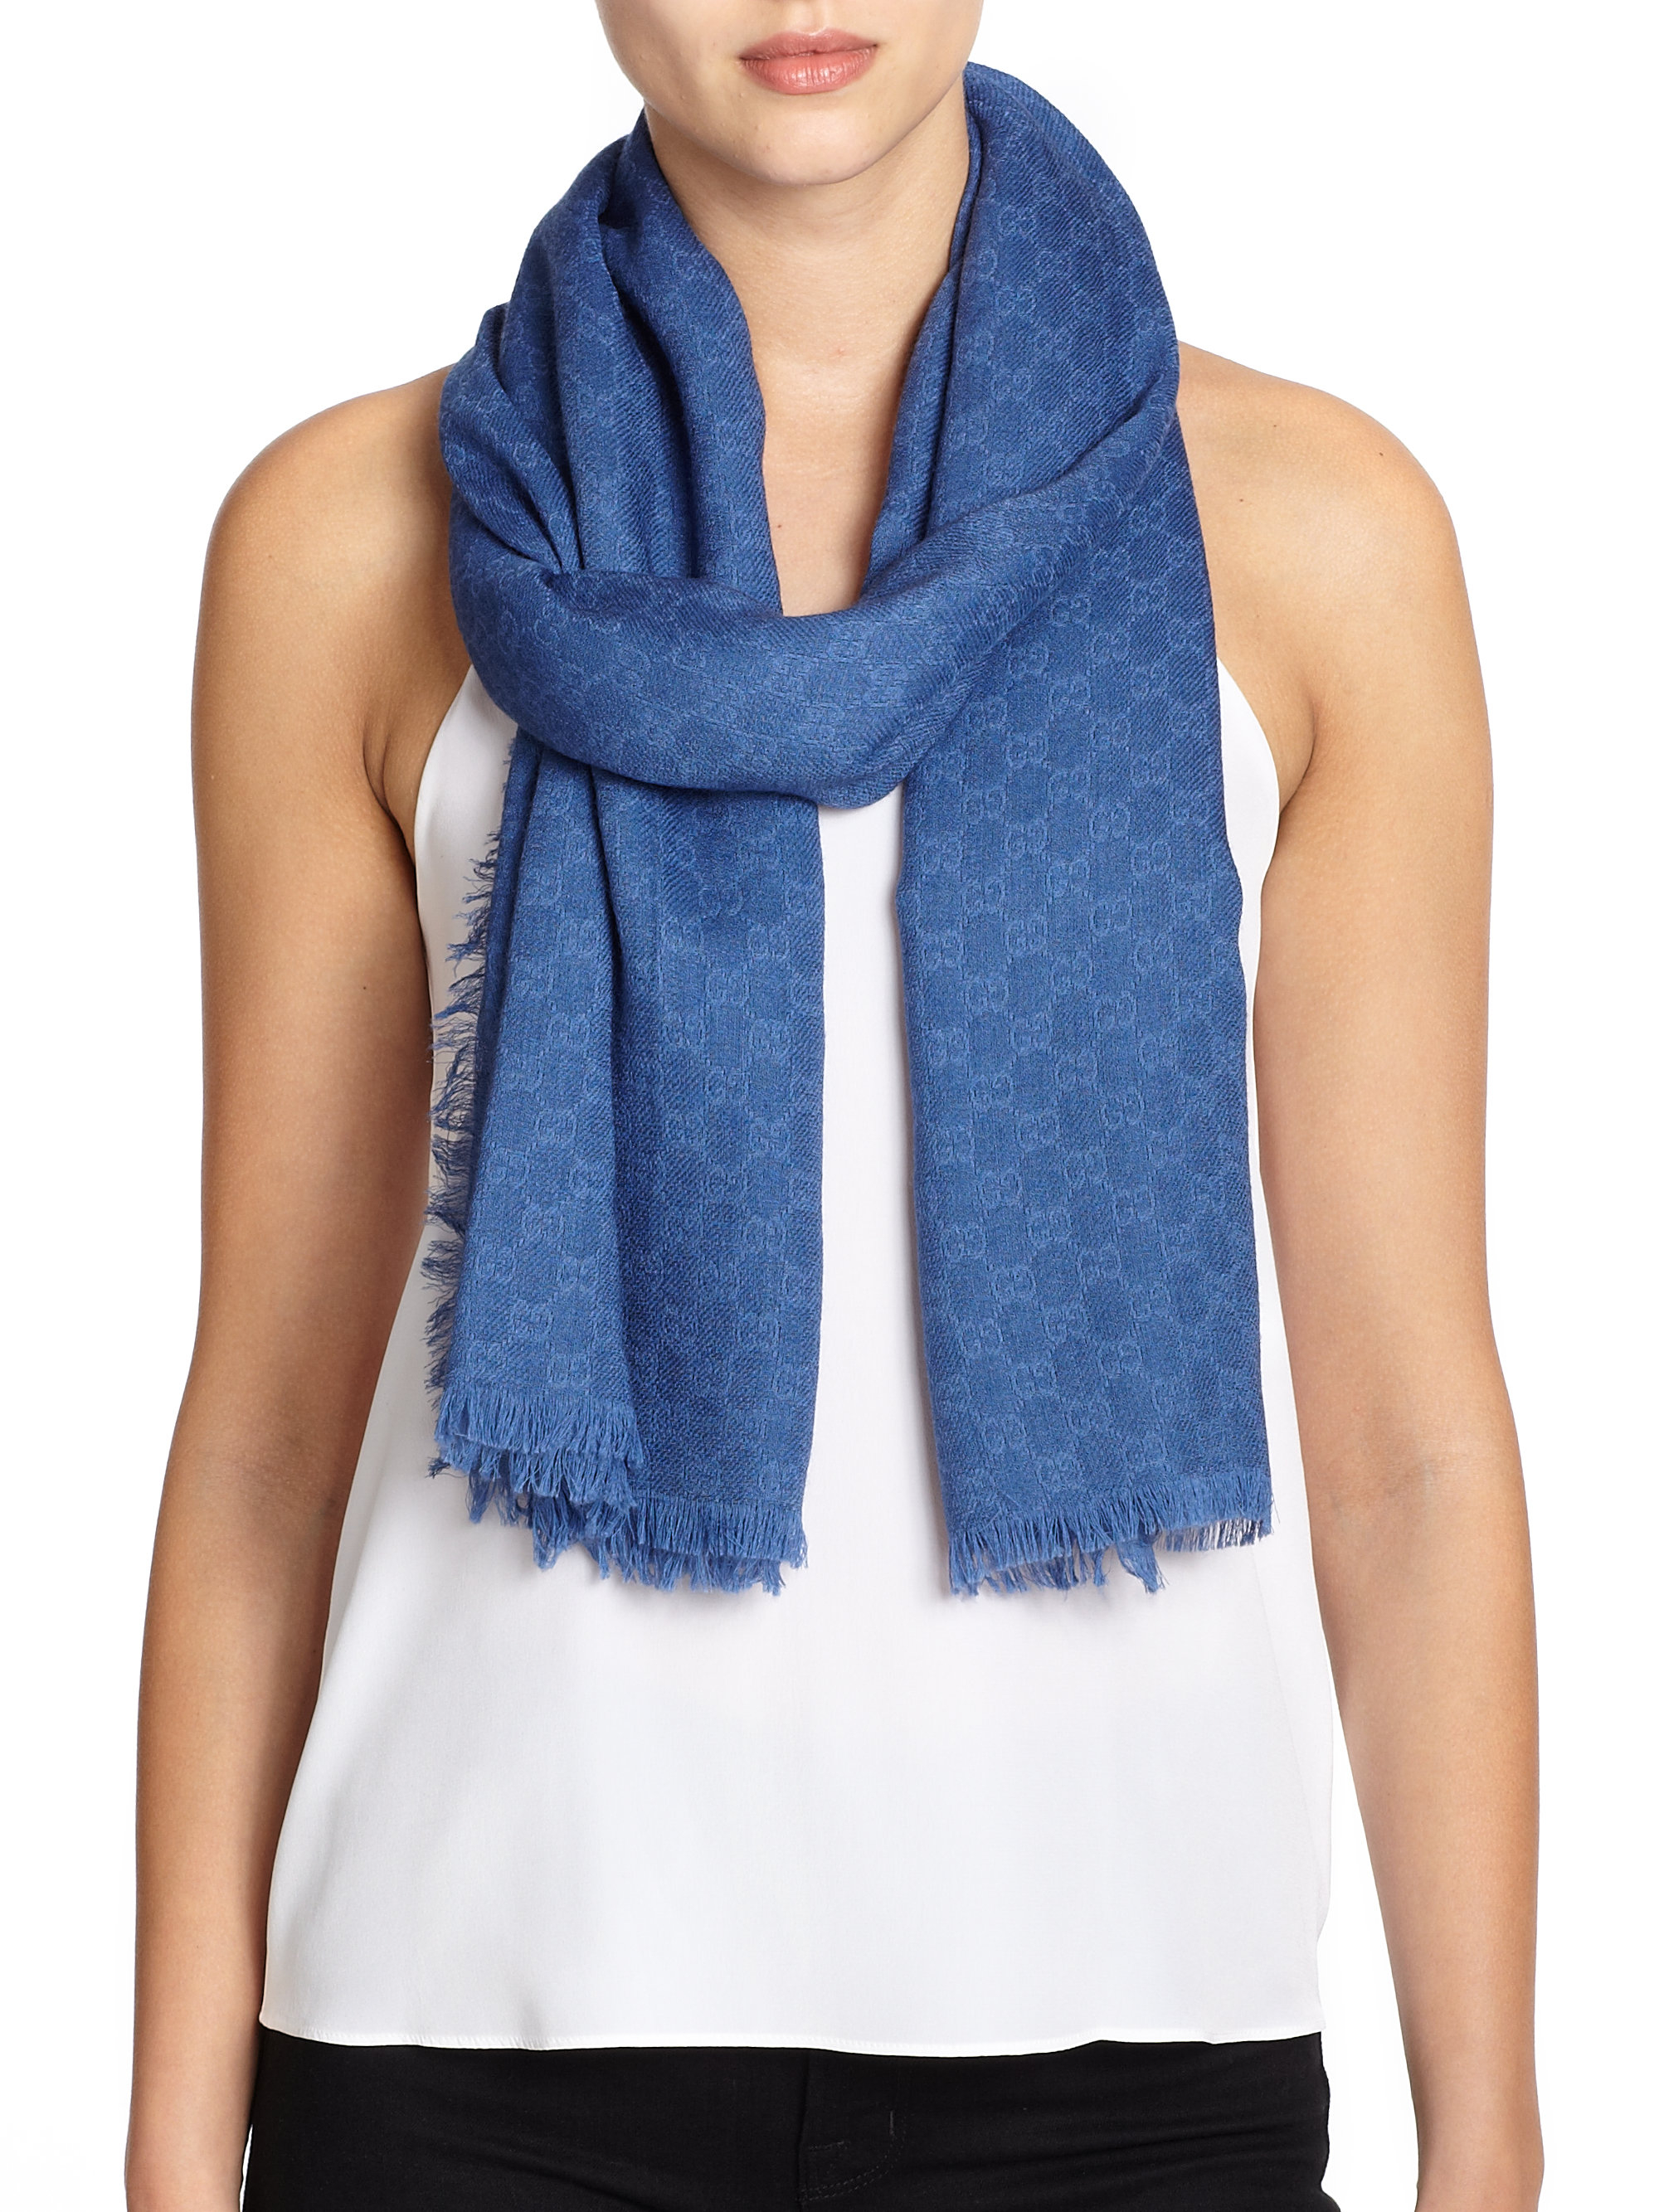 wool scarf blue